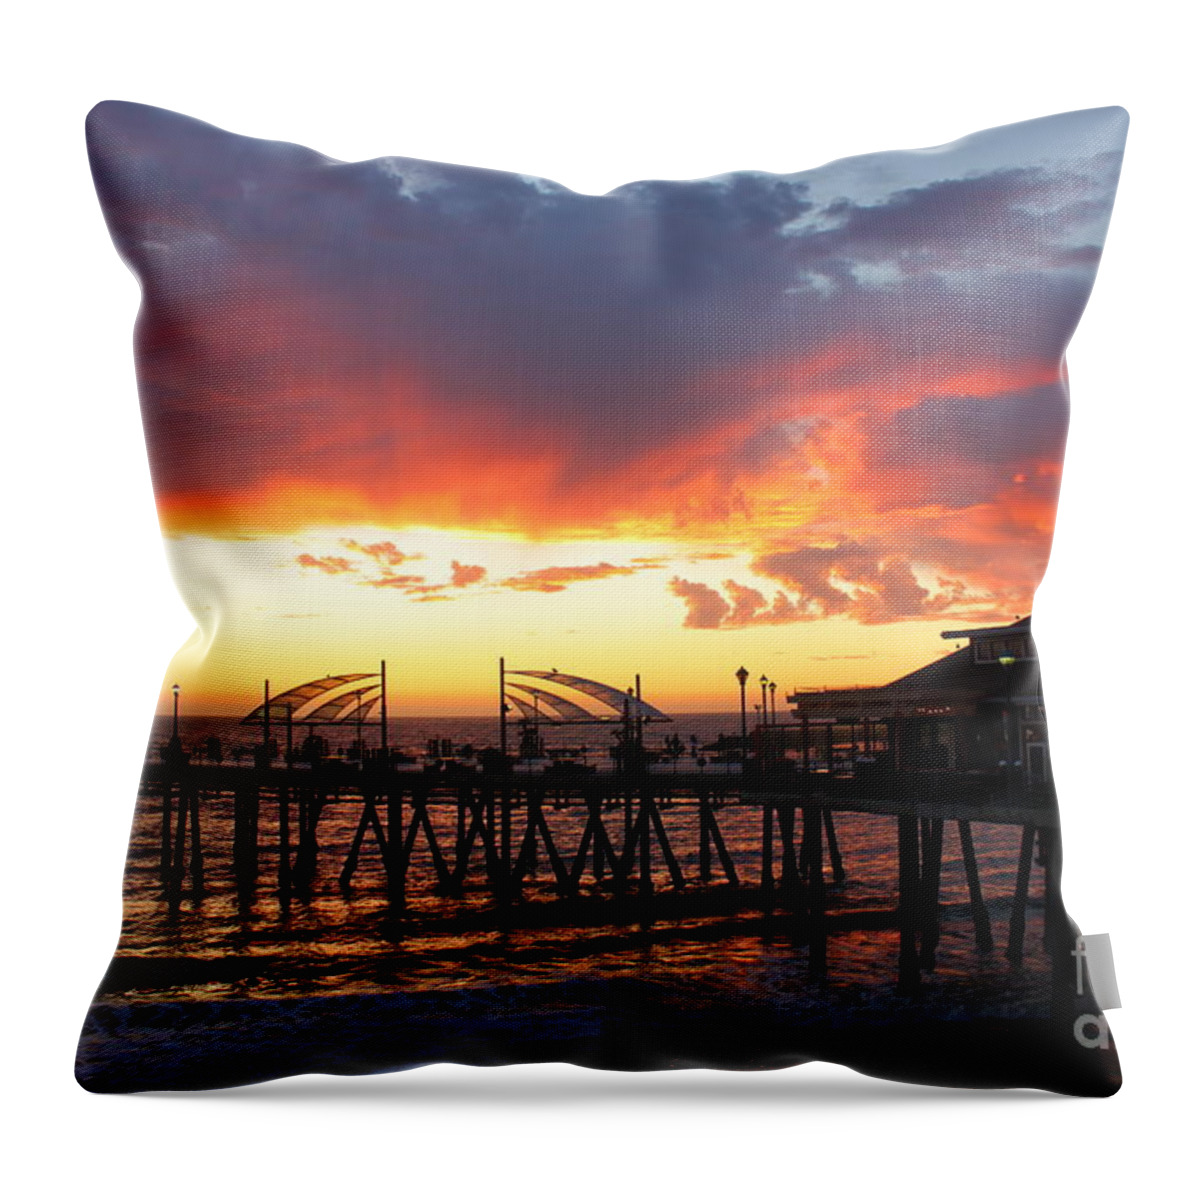 Redondo Beach Throw Pillow featuring the photograph Redondo Pier Sunset by Bev Conover